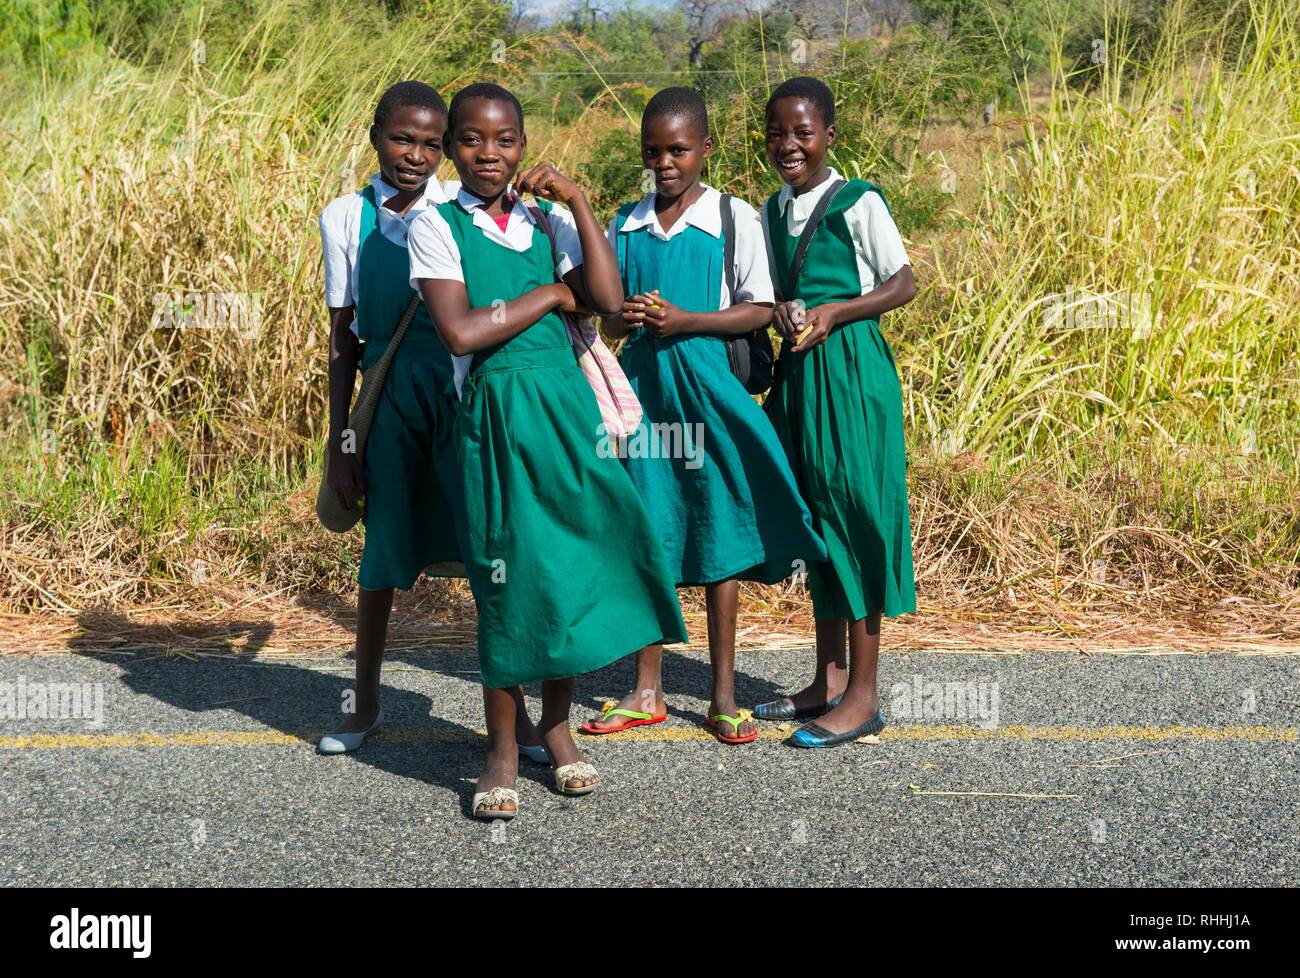 Junge Mädchen auf dem Weg nach Hause, von Cape Maclear, Malawi, Afrika Stockfoto